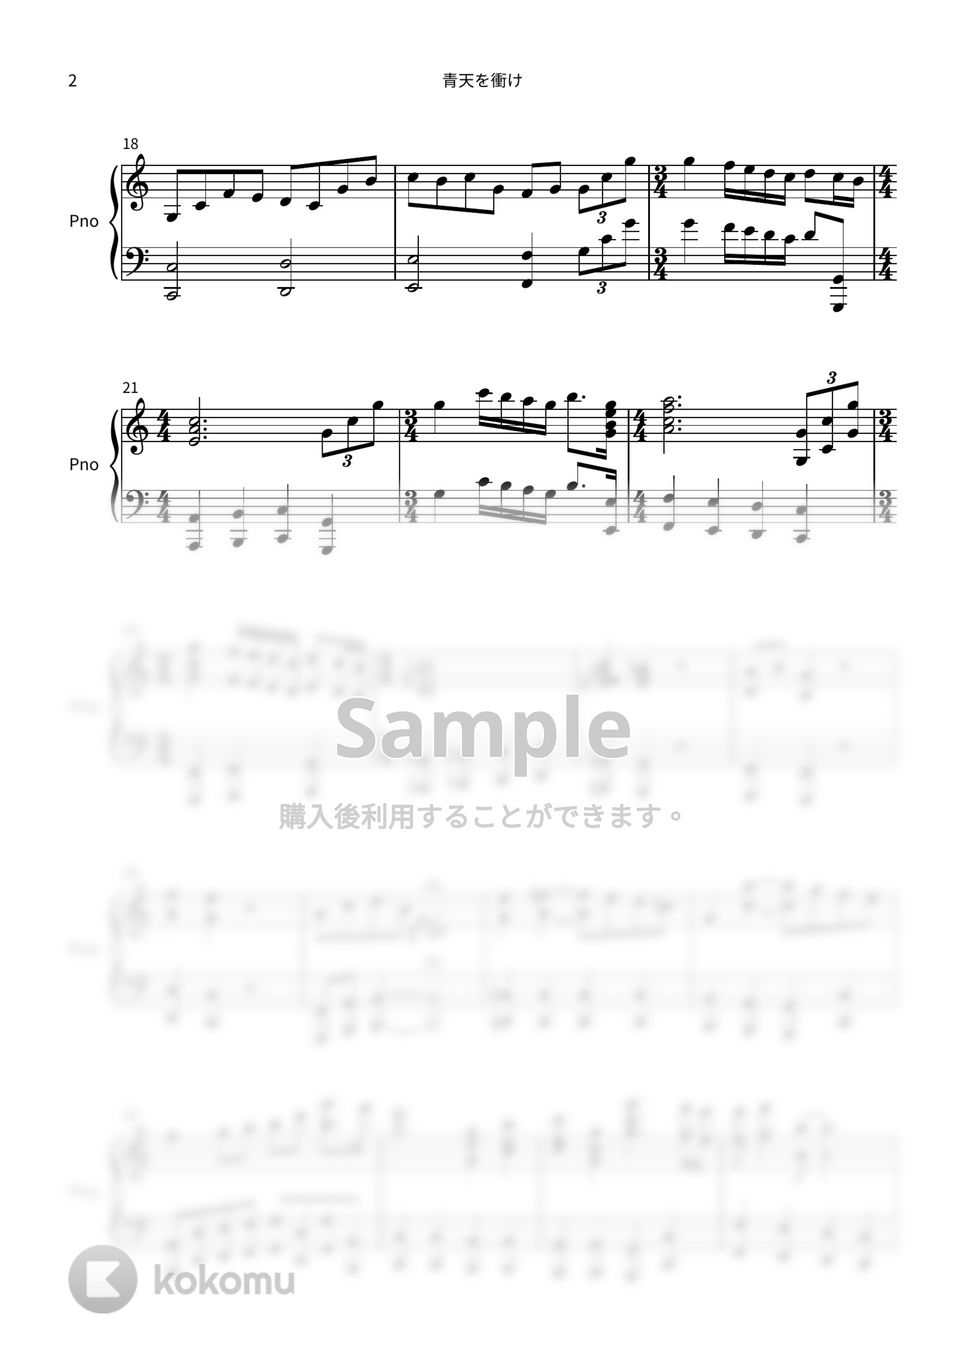 青天を衝け - 青天を衝け (2021年 NHK大河ドラマ メインテーマ) by sorairo 777